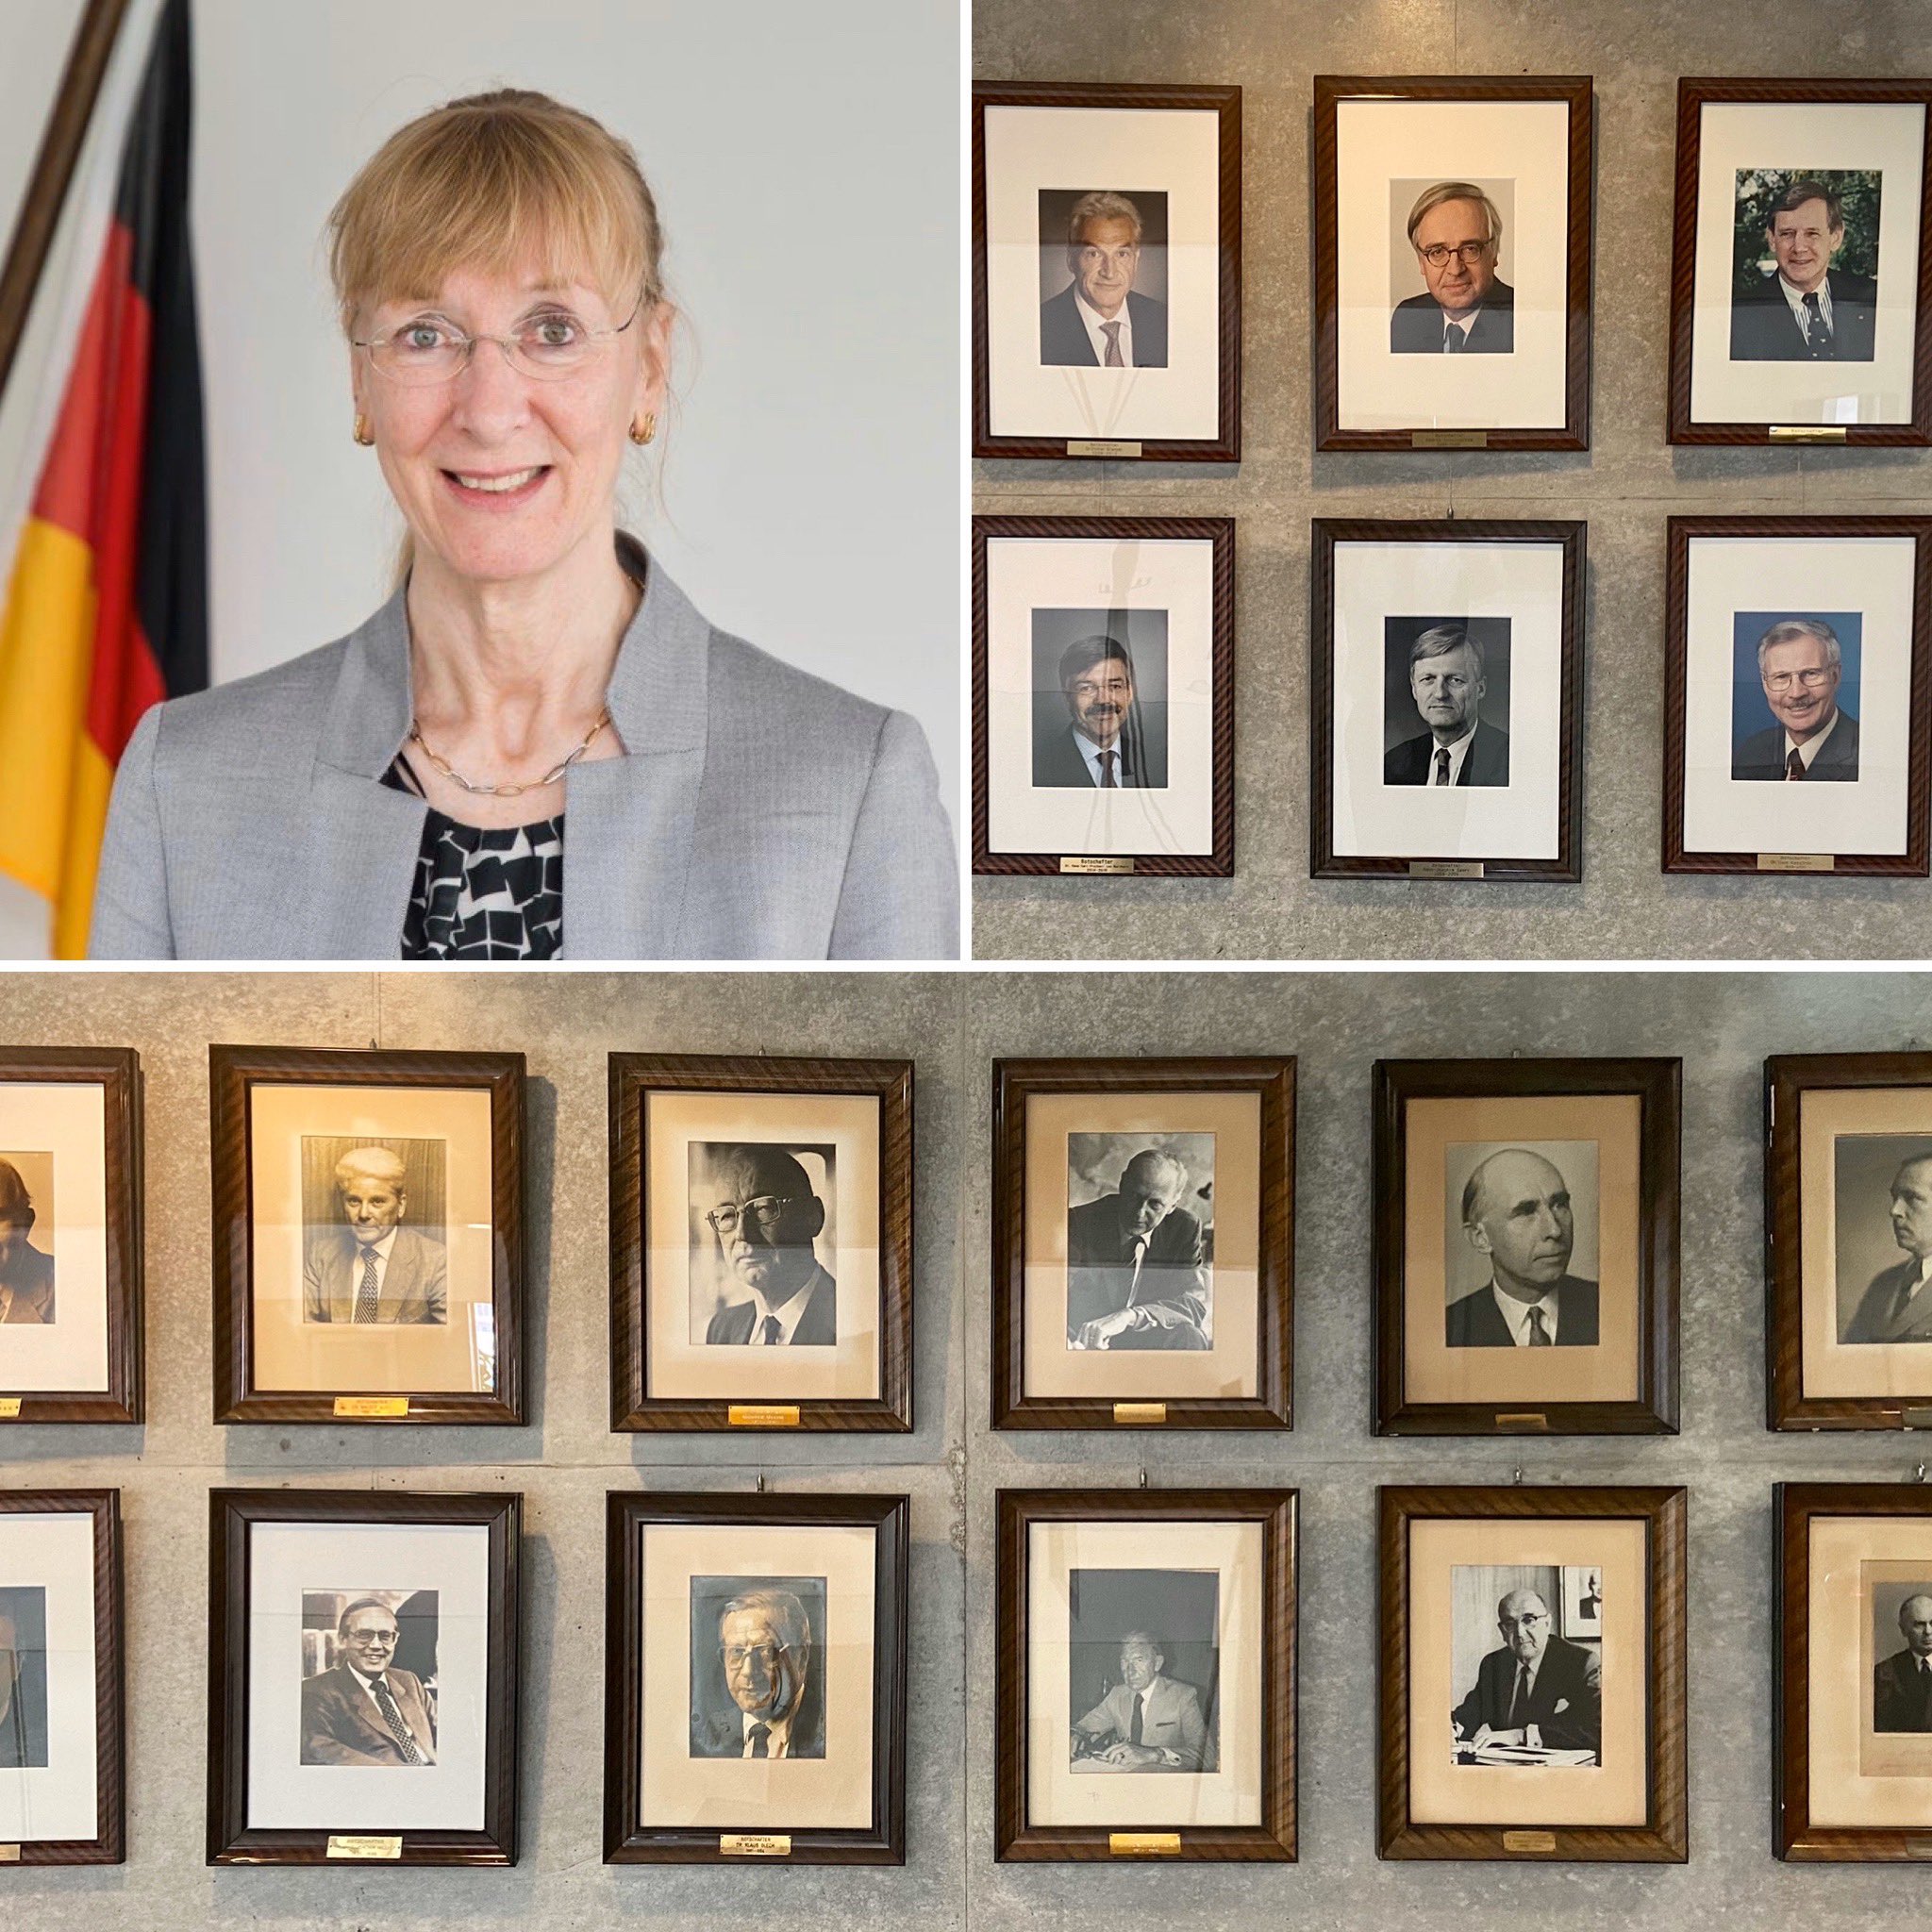 「今日は #国際女性デー。残念ながら世界にあるドイツの在外公館の大使のうち女性はわずか15%ほど。この数を、私達は早急に大きく増やしたいと思っています。
これまで私の前任者たちは皆男性でしたので、初の女性駐日ドイツ大使であることを嬉しく思います。」
レーペル大使
#InternationalWomensDay https://t.co/olCvBTozvz